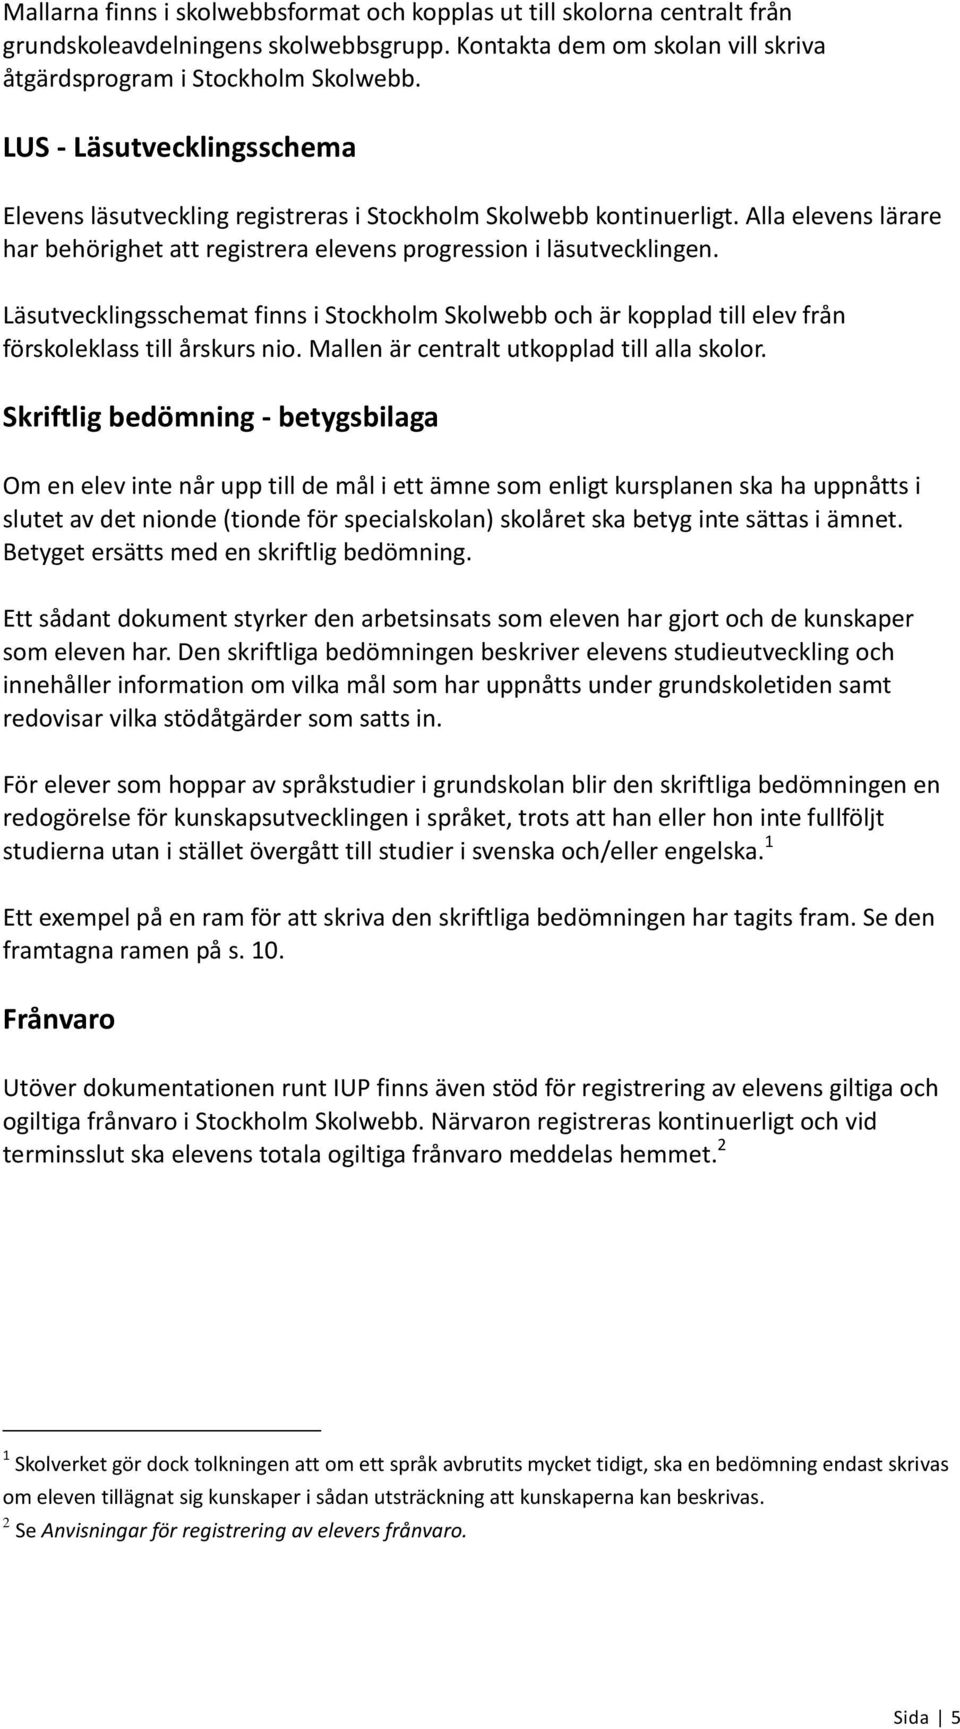 Läsutvecklingsschemat finns i Stockholm Skolwebb och är kopplad till elev från förskoleklass till årskurs nio. Mallen är centralt utkopplad till alla skolor.